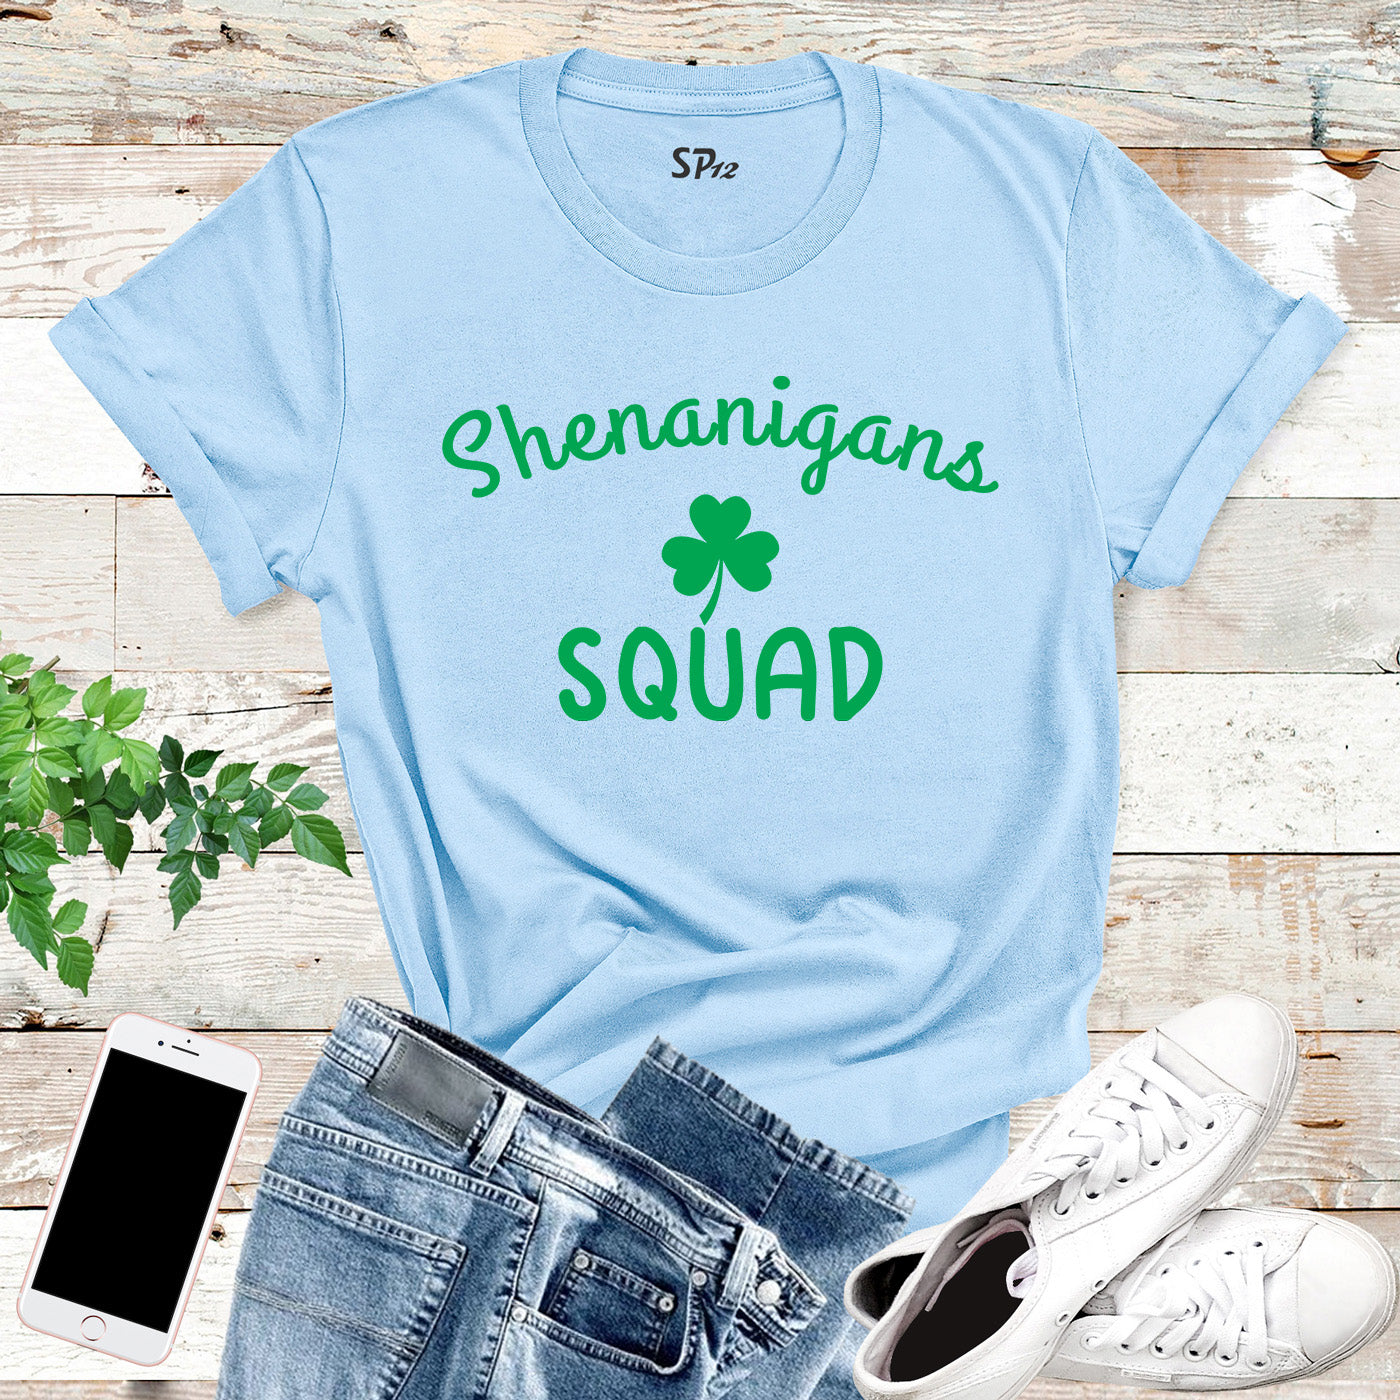 Shenanigans Squad St Patricks Day T Shirt